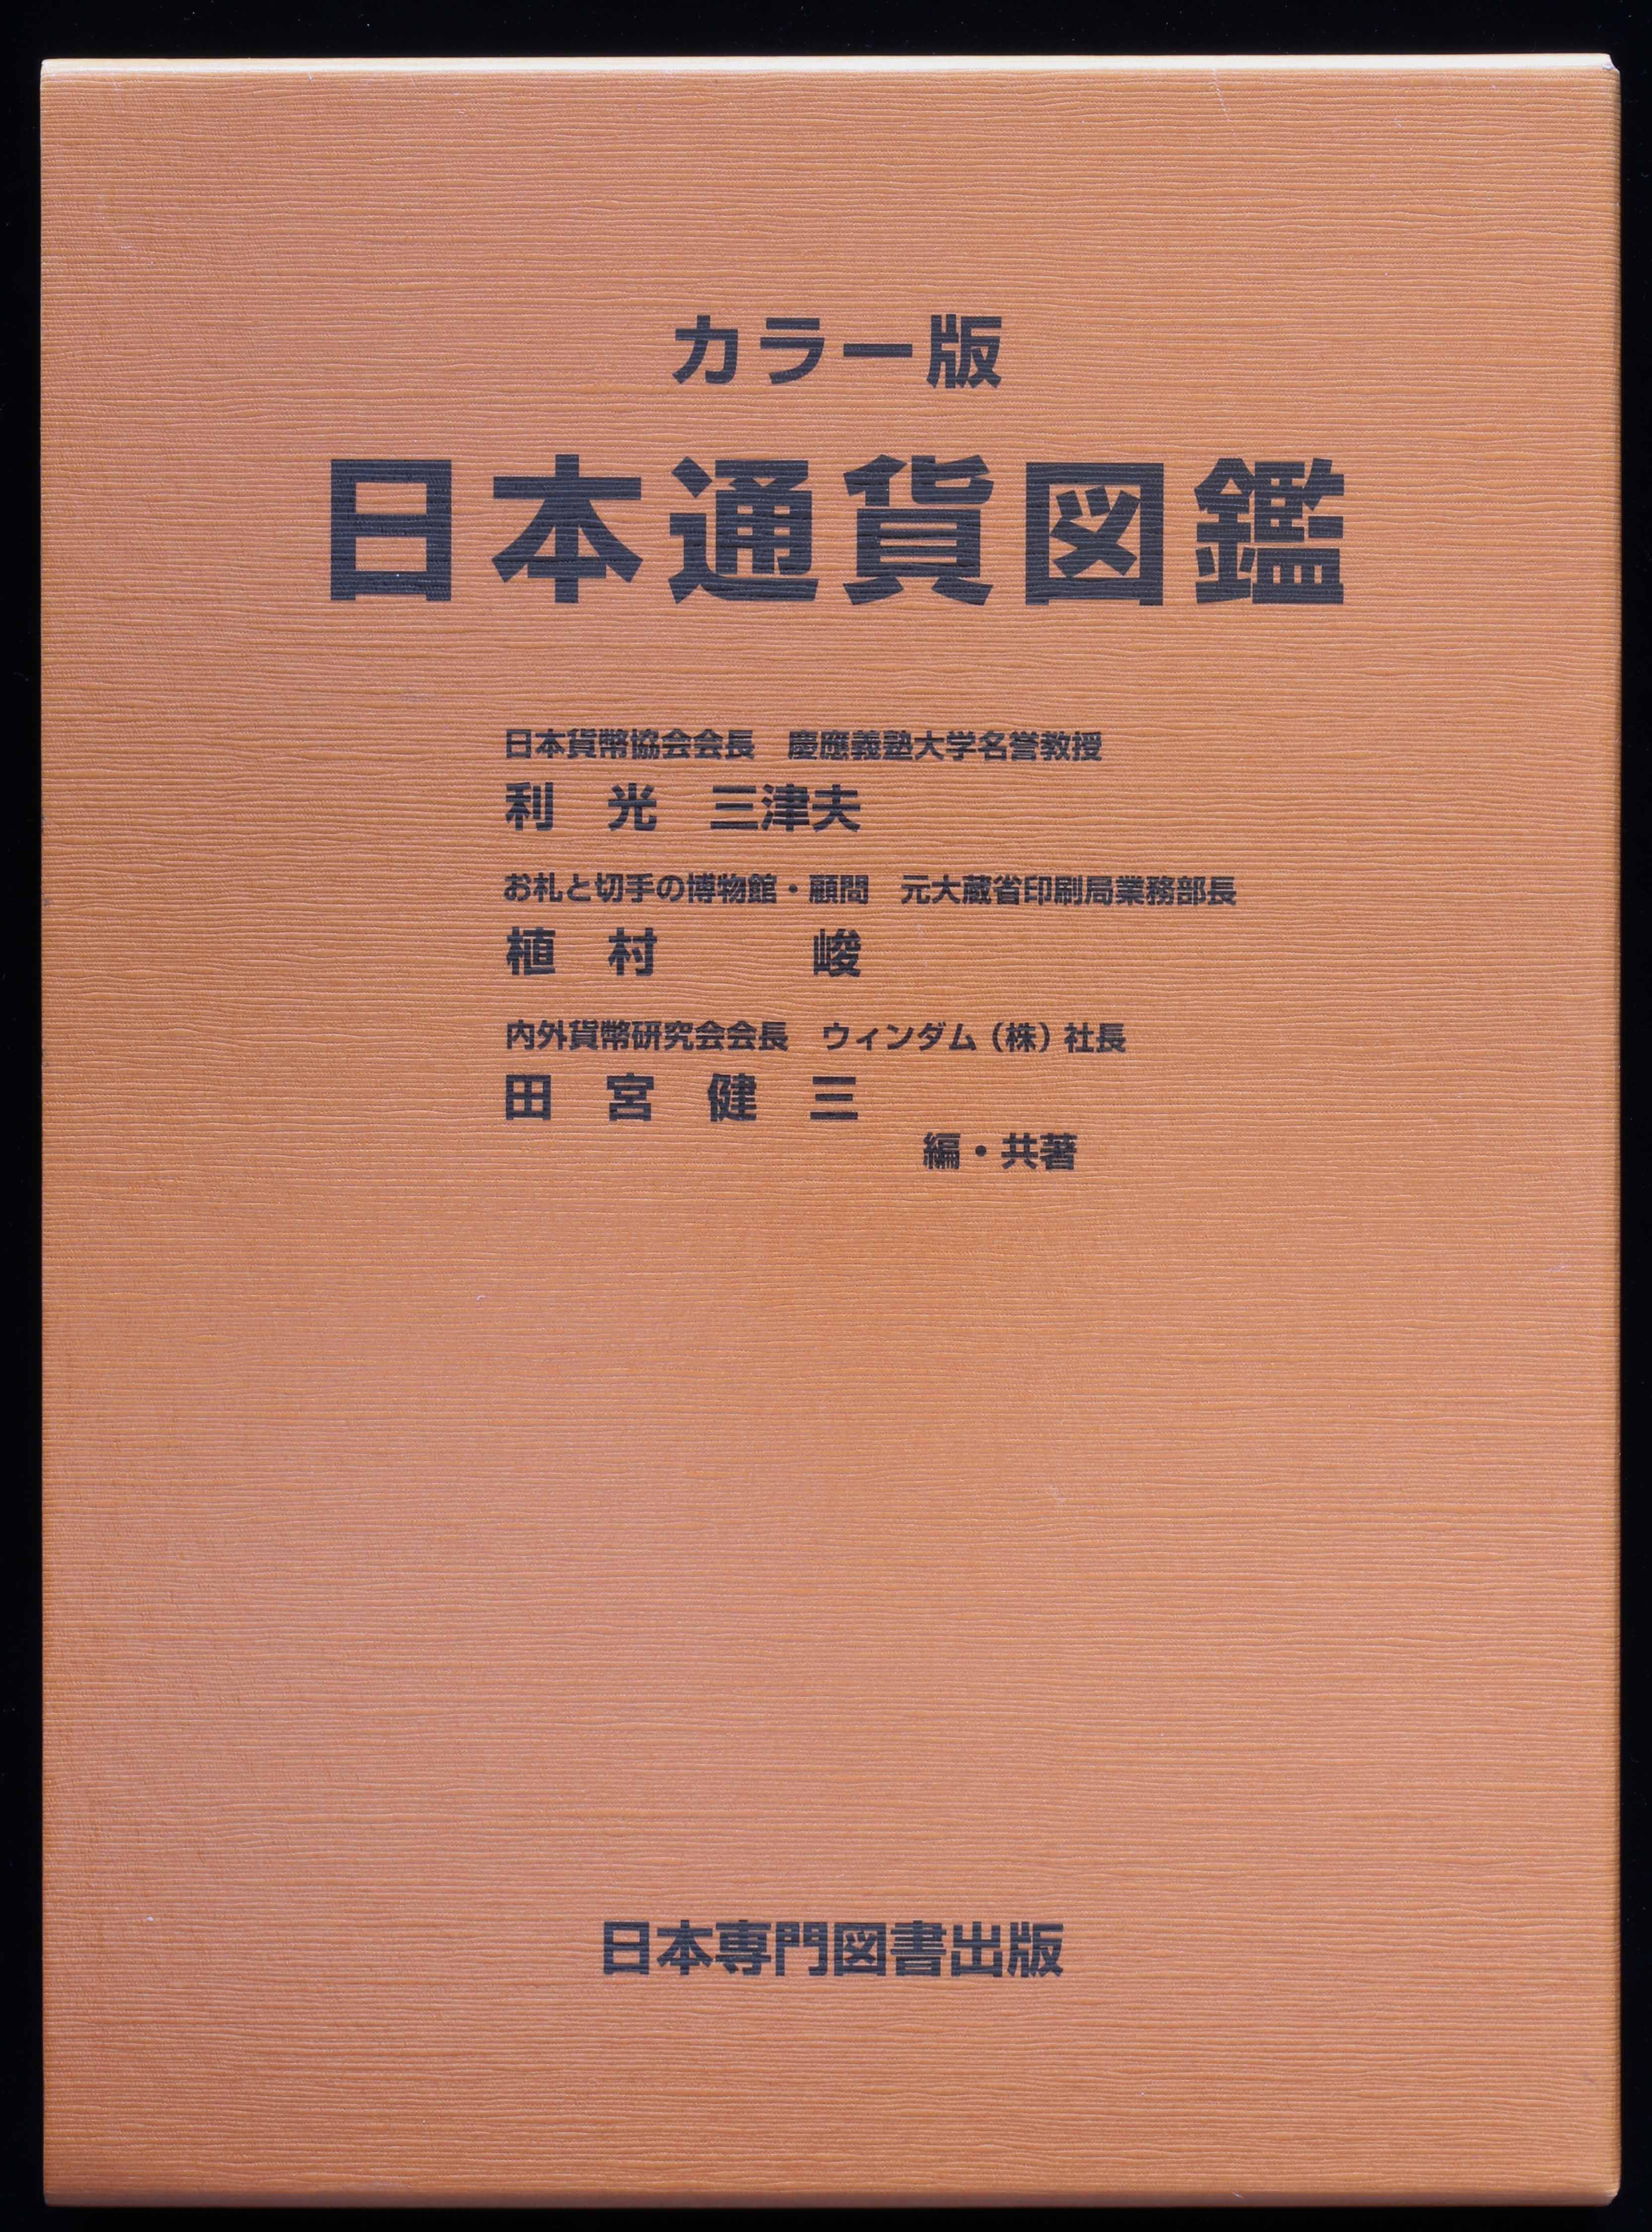 貨幣博物館 | Books 書籍 『日本貨幣図鑑』郡司勇夫 編/『日本通貨図鑑 